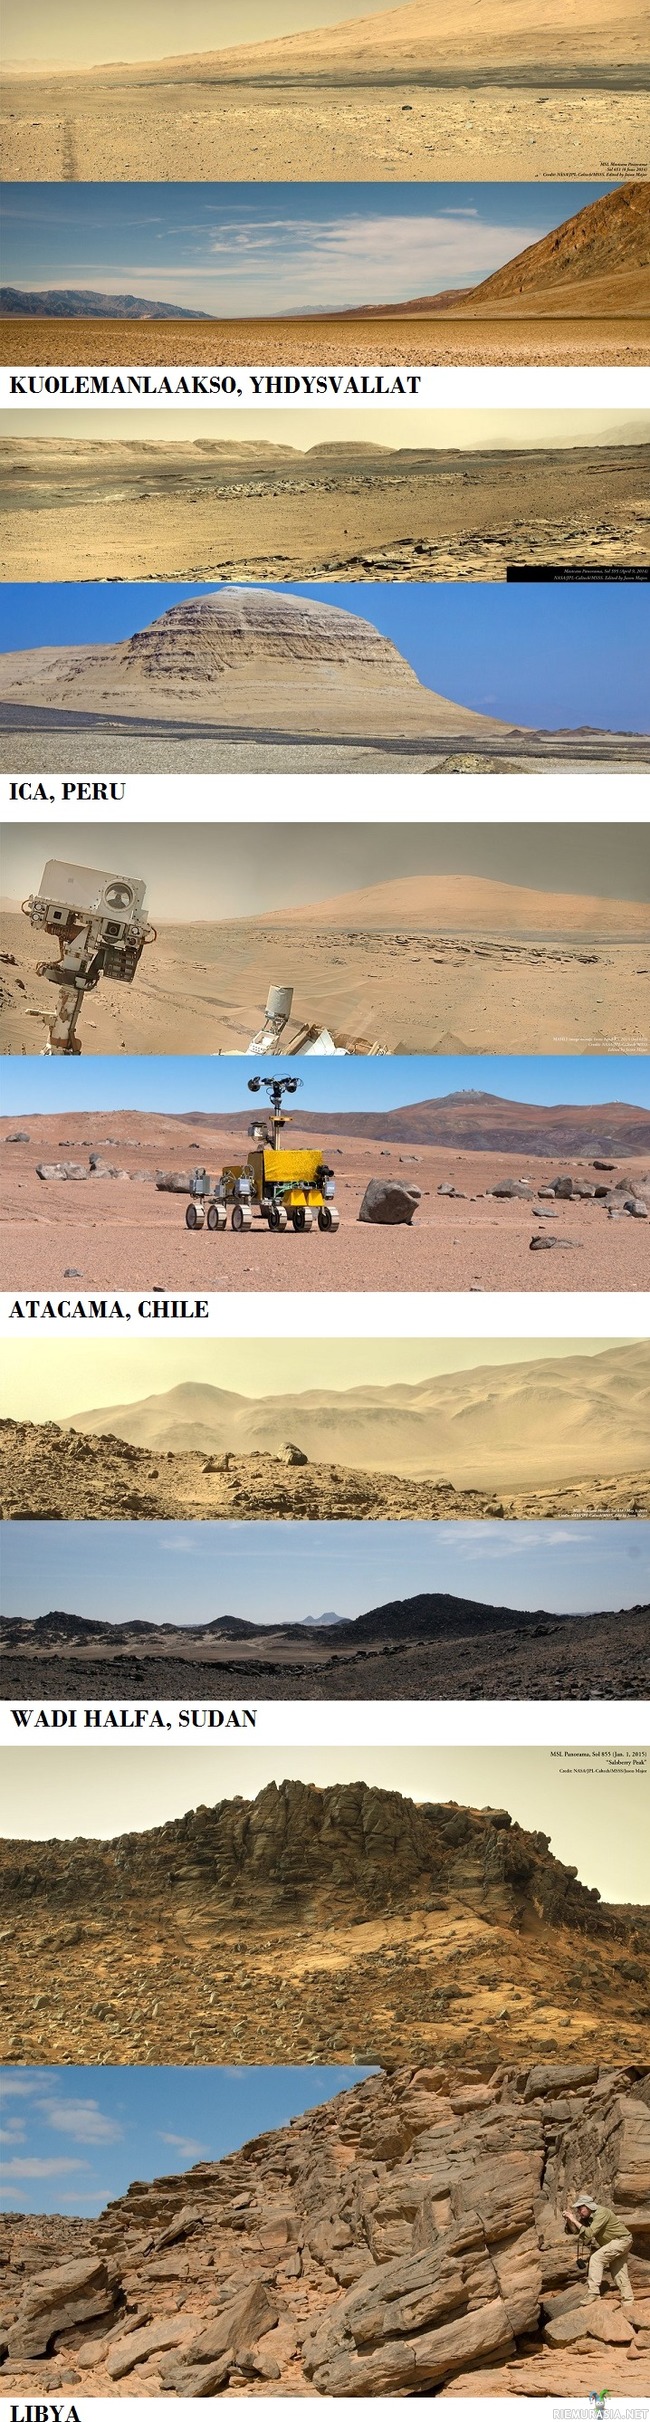 Valokuvia Mars-planeetalta ja Maapallolta - Ei siellä Mars-planeetalla maisemat niin kovin erilaisilta näytä Maahan verrattuna.